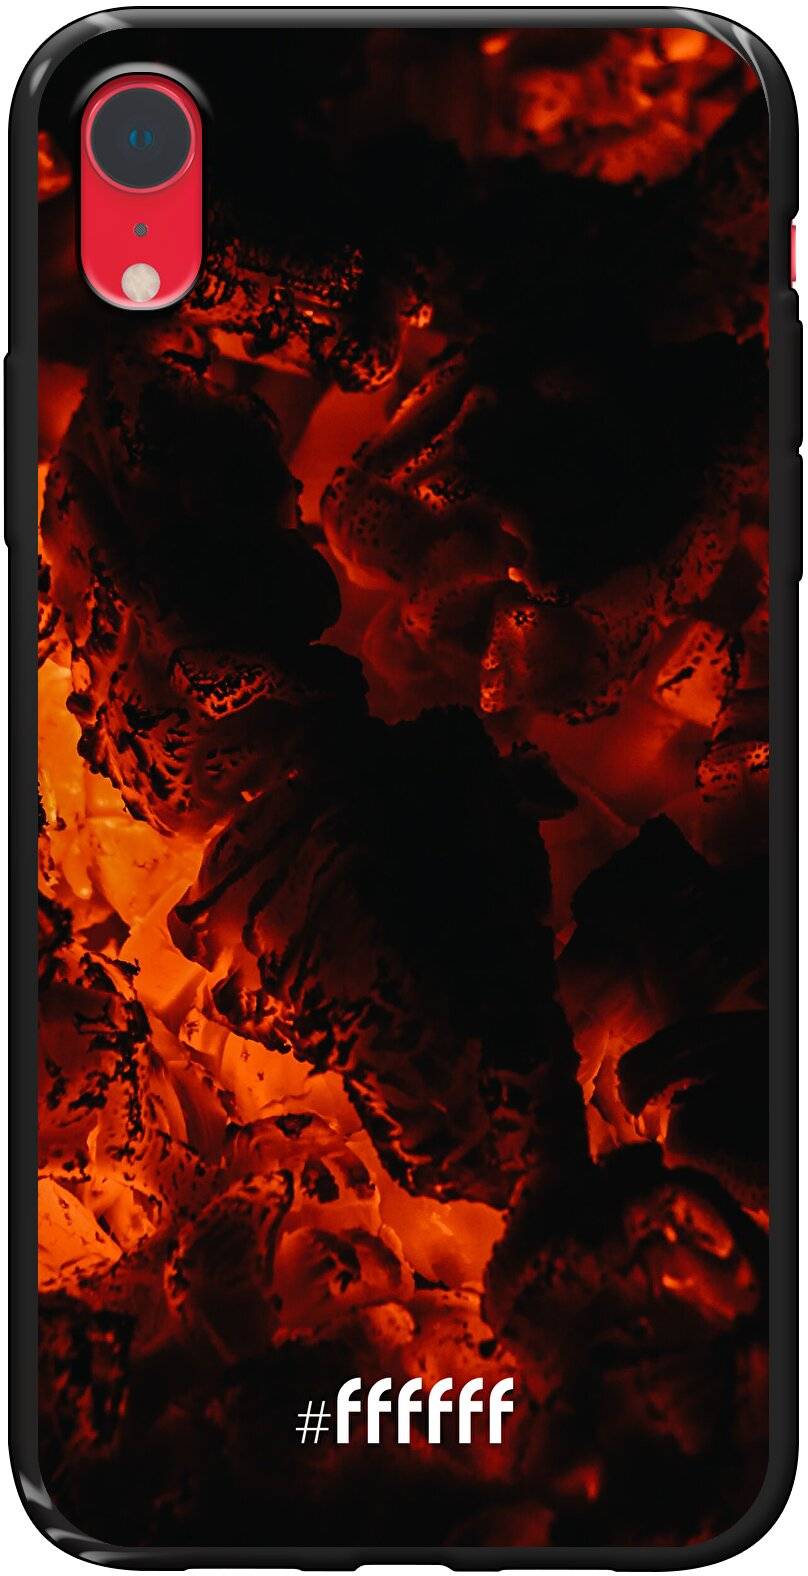 Hot Hot Hot iPhone Xr